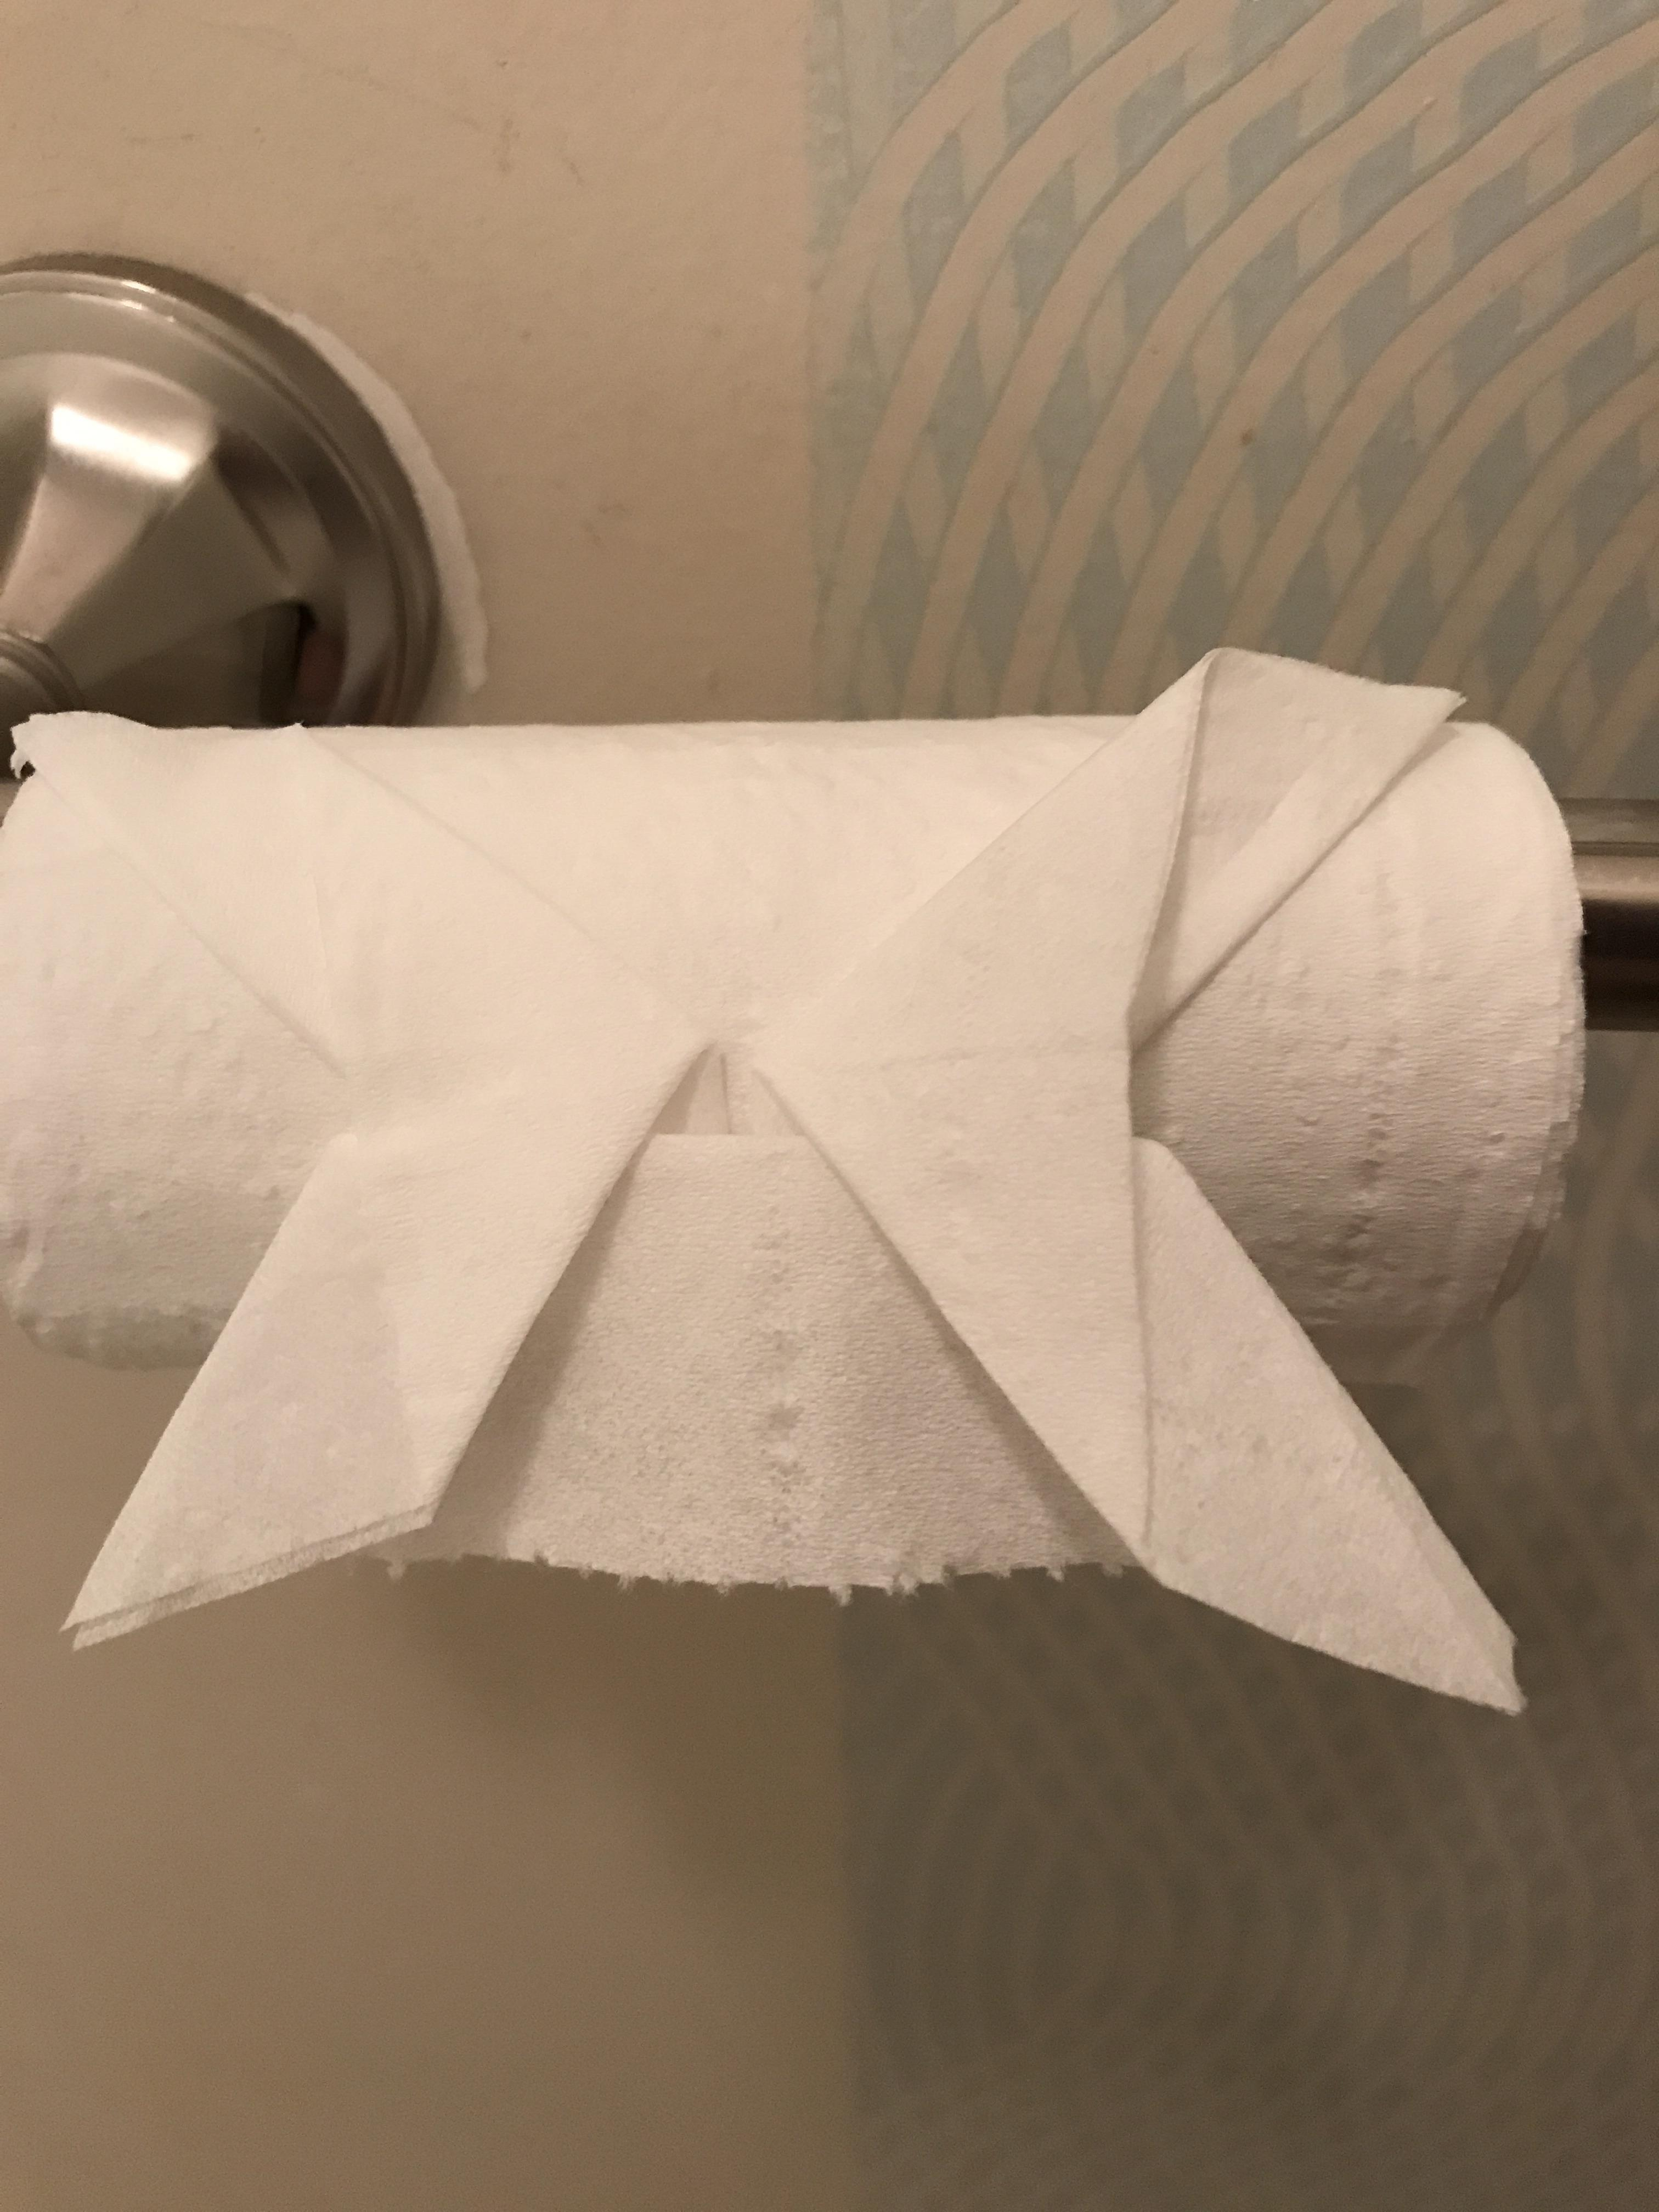 Origami Toilet Paper Toilet Paper Origami Album On Imgur